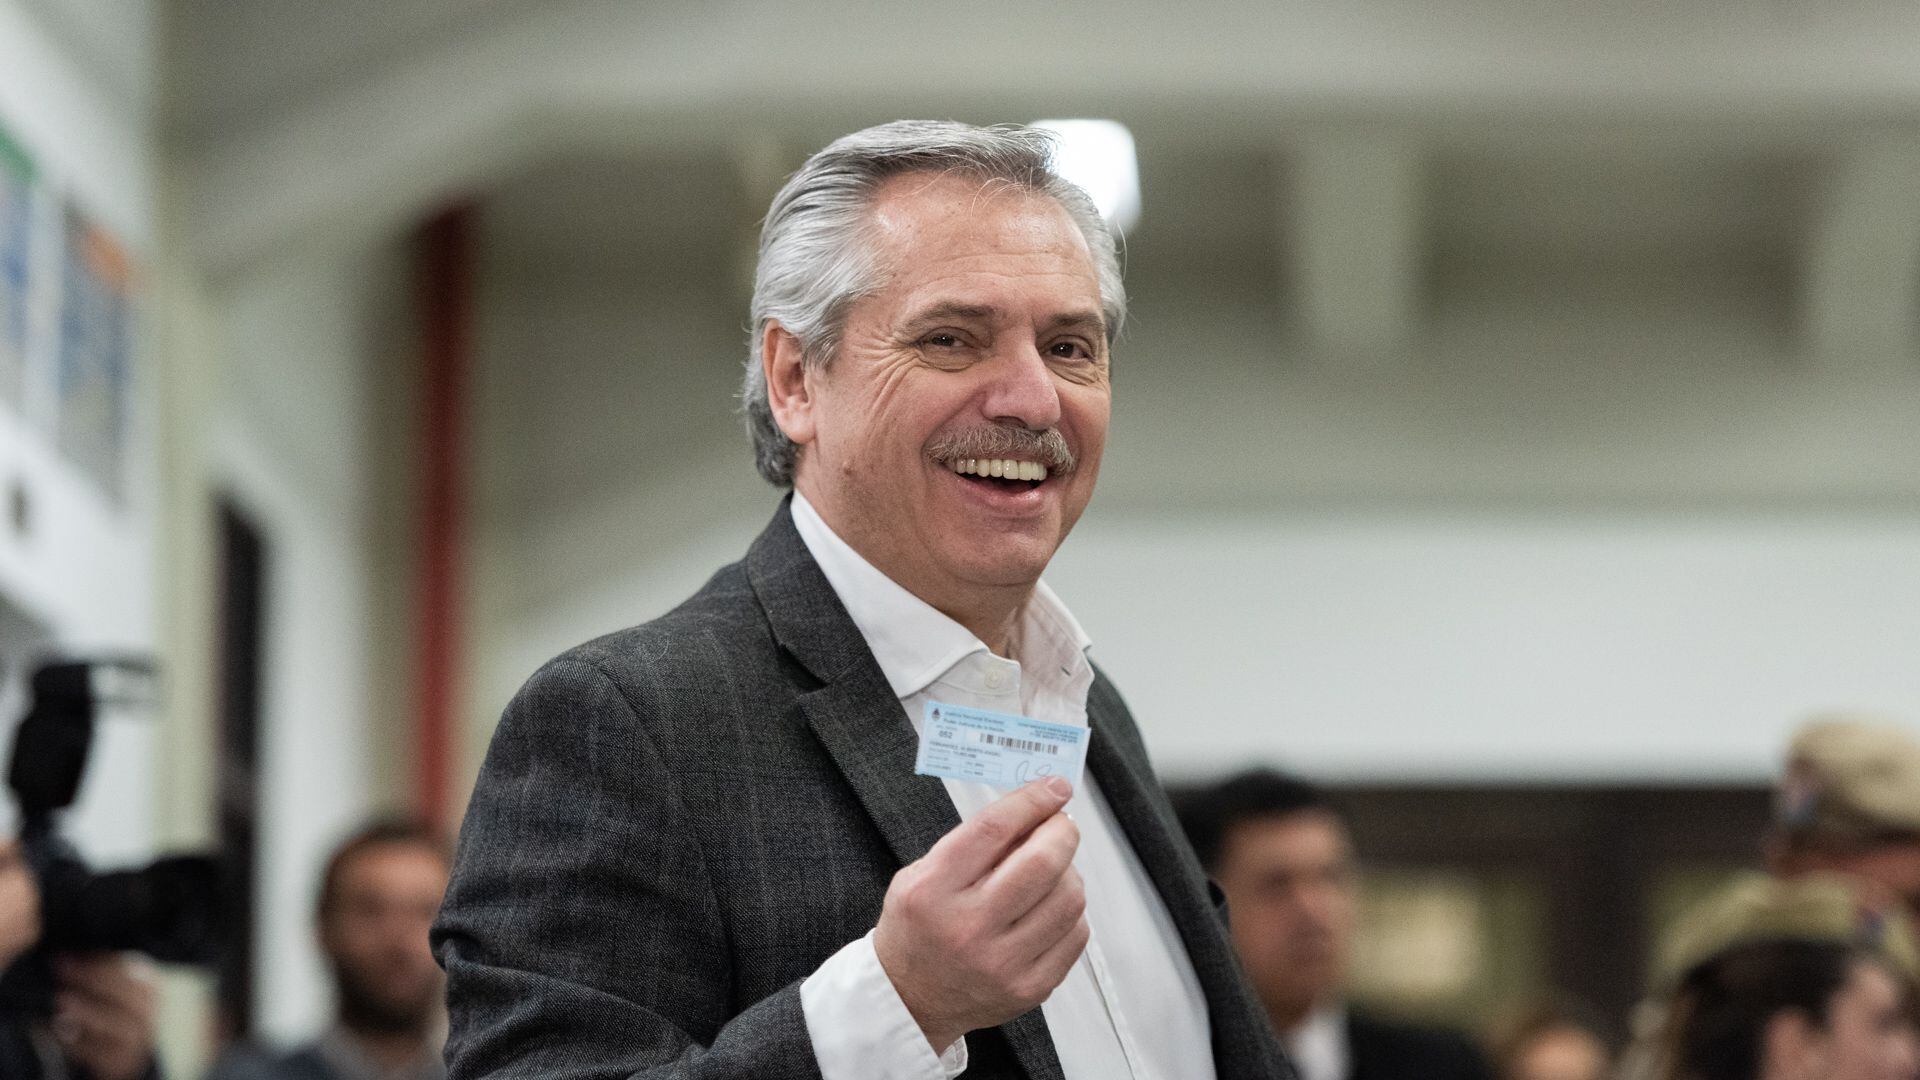 Alberto Fernández, mostrando su certificado de votación en las PASO 2019 (Adrián Escandar/Infobae)